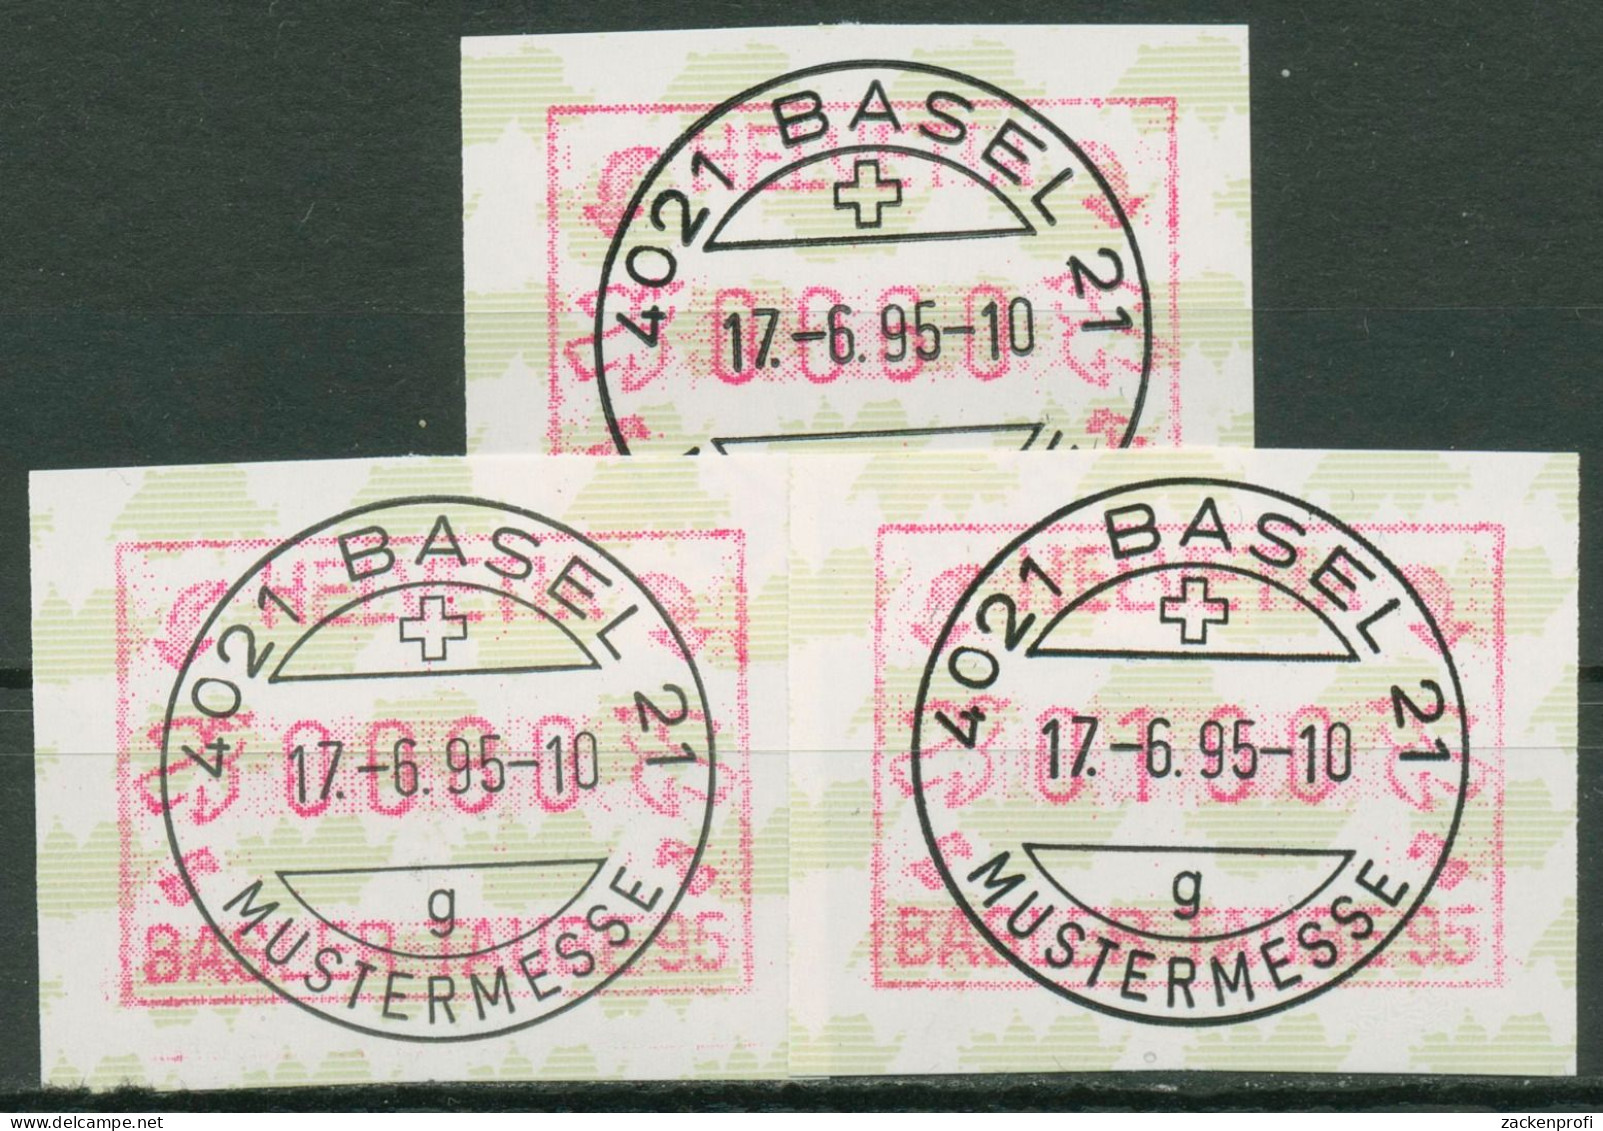 Schweiz Automatenmarken 1995 Basler Taube ATM 6 S 1 Gestempelt - Automatenmarken